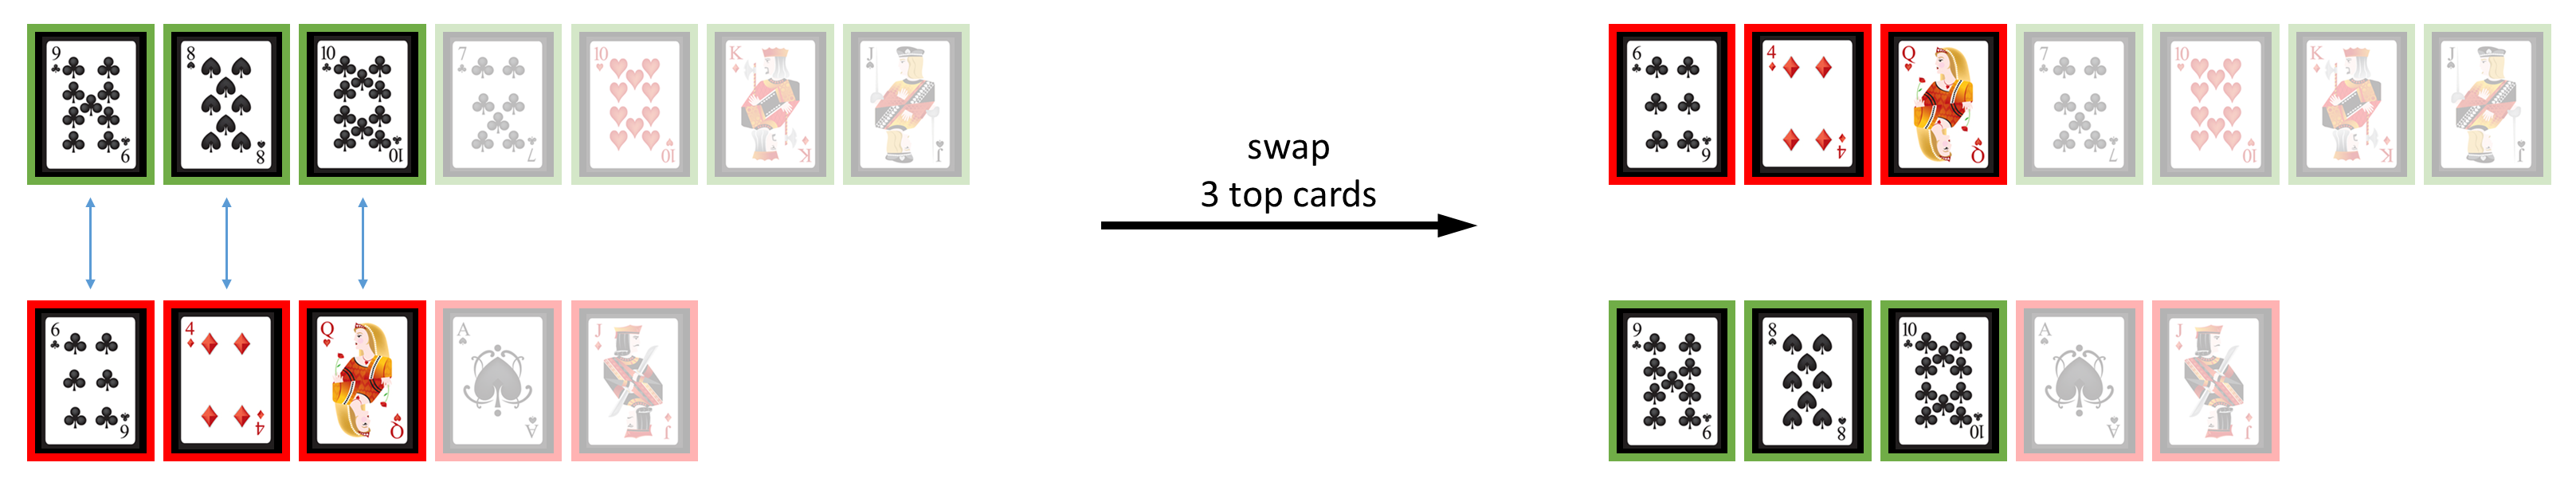 swap top cards